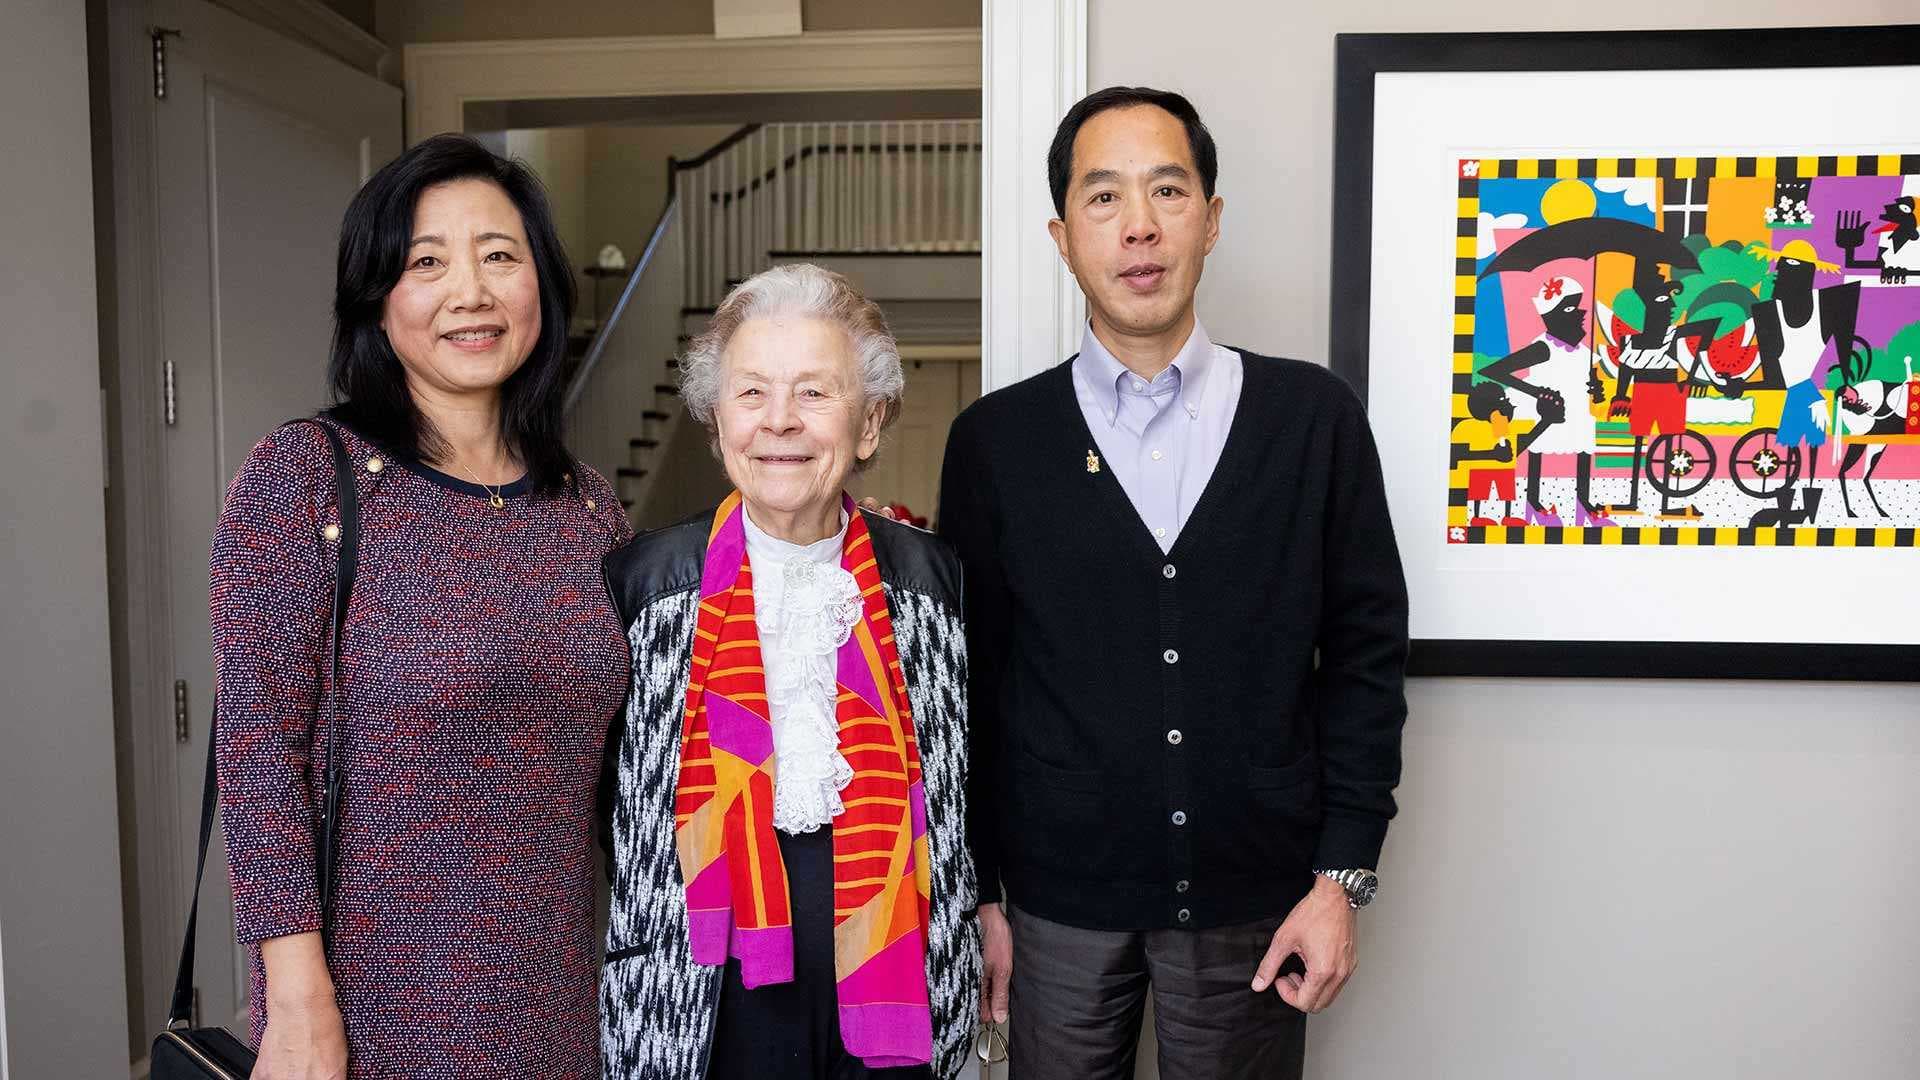 Beibei Li Ph.D. ’98, Elisabeth Gantt and Zairen Sun Ph.D. ’98 pose together